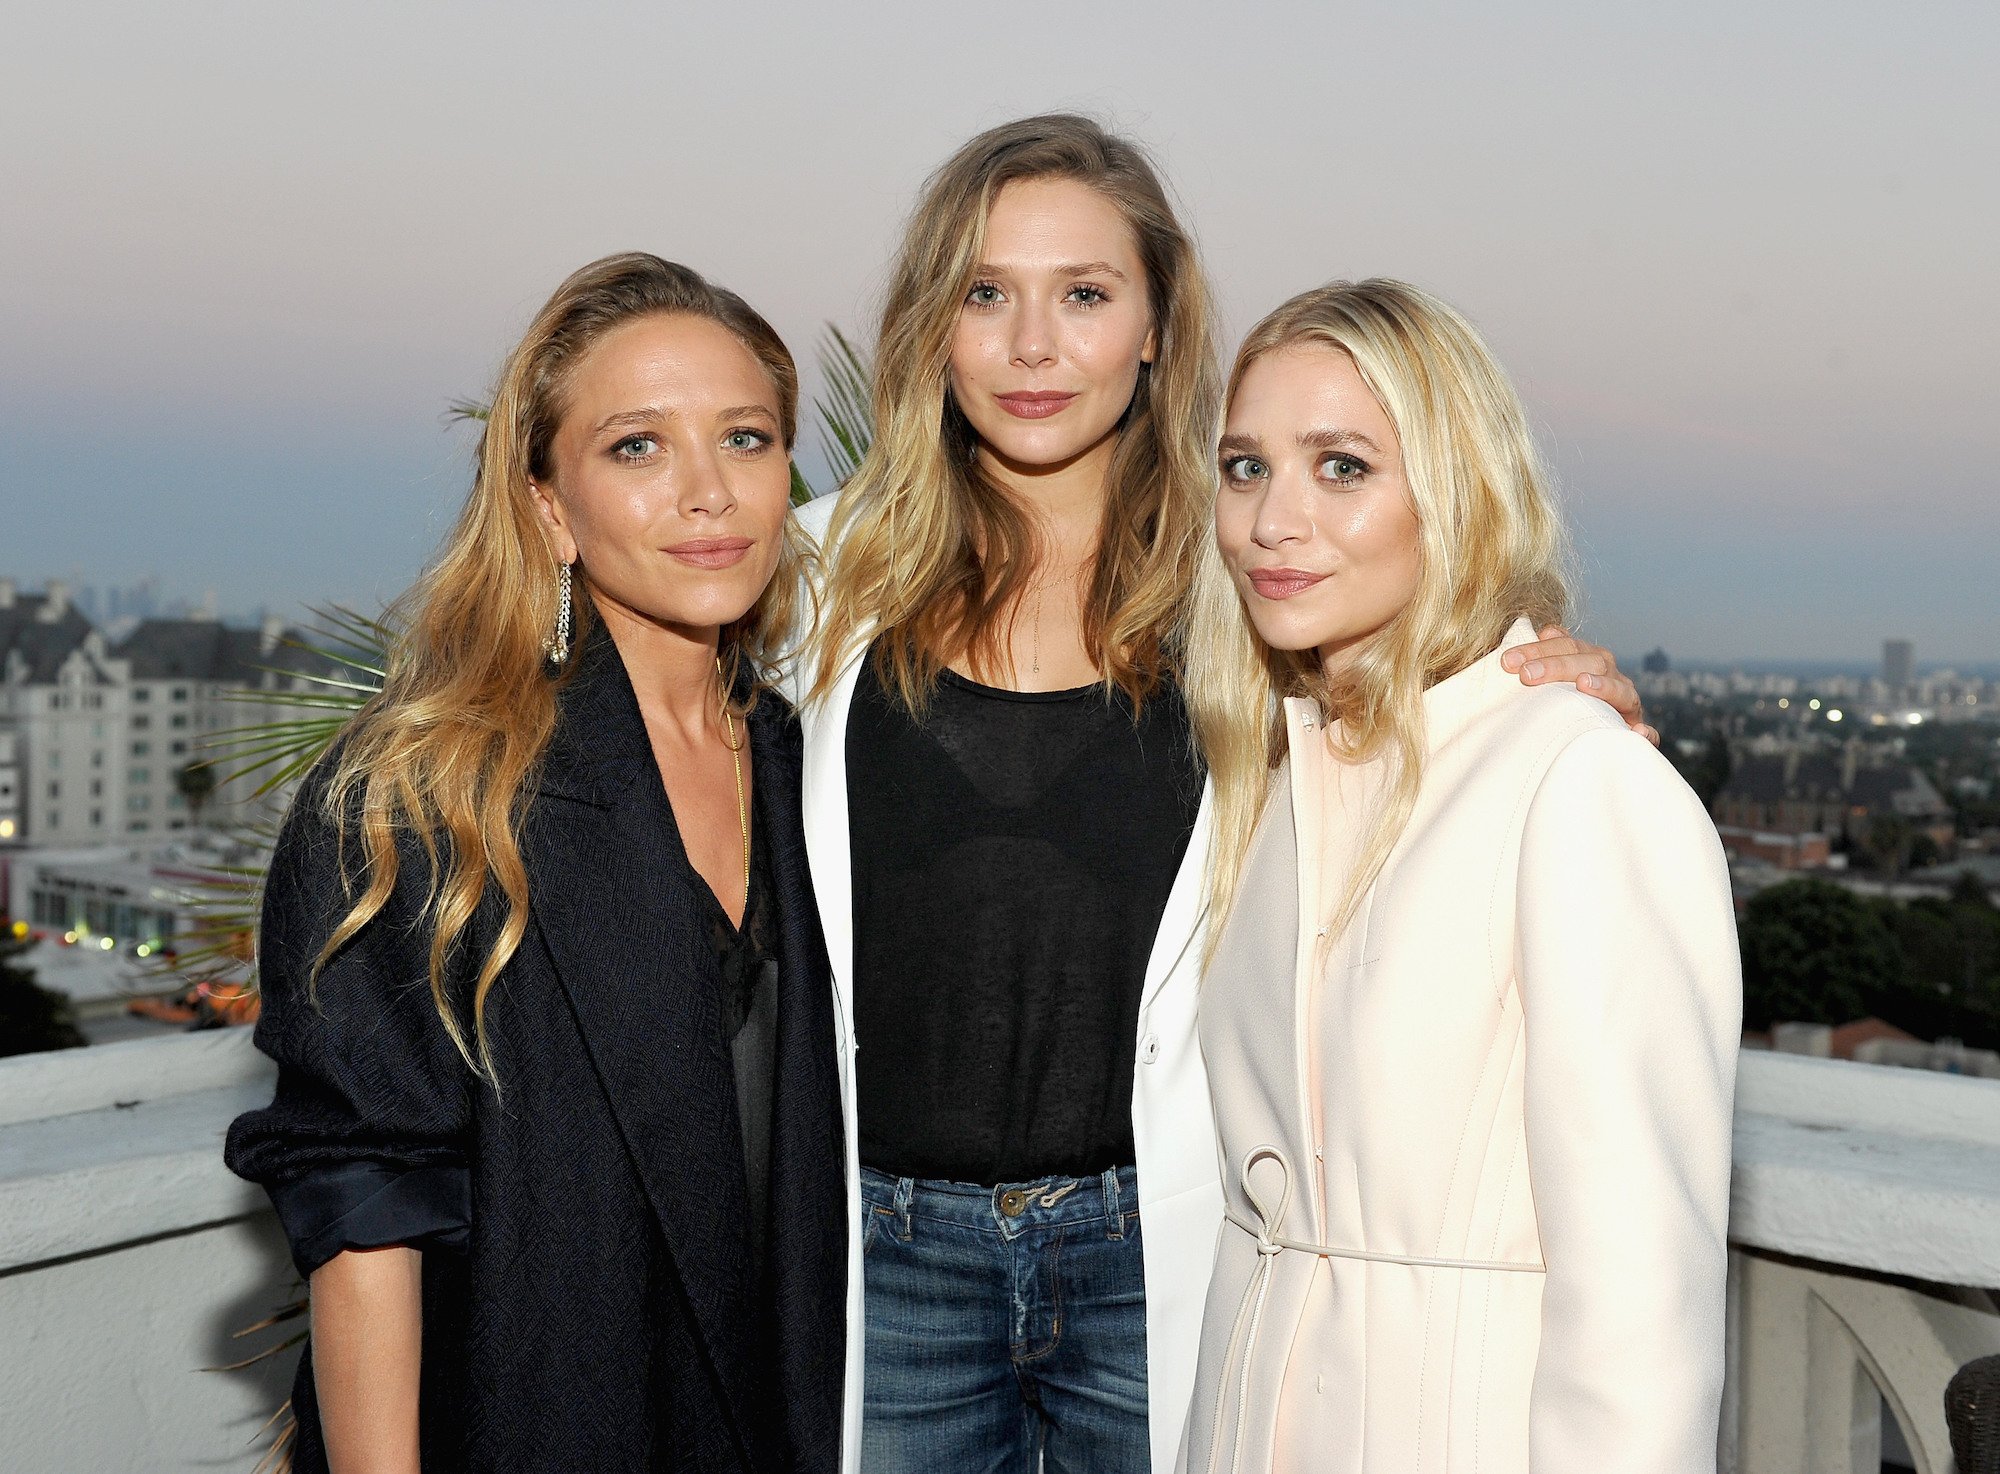 Mary-Kate Olsen, Elizabeth Olsen, and Ashley Olsen at Chateau Marmont on July 26, 2016